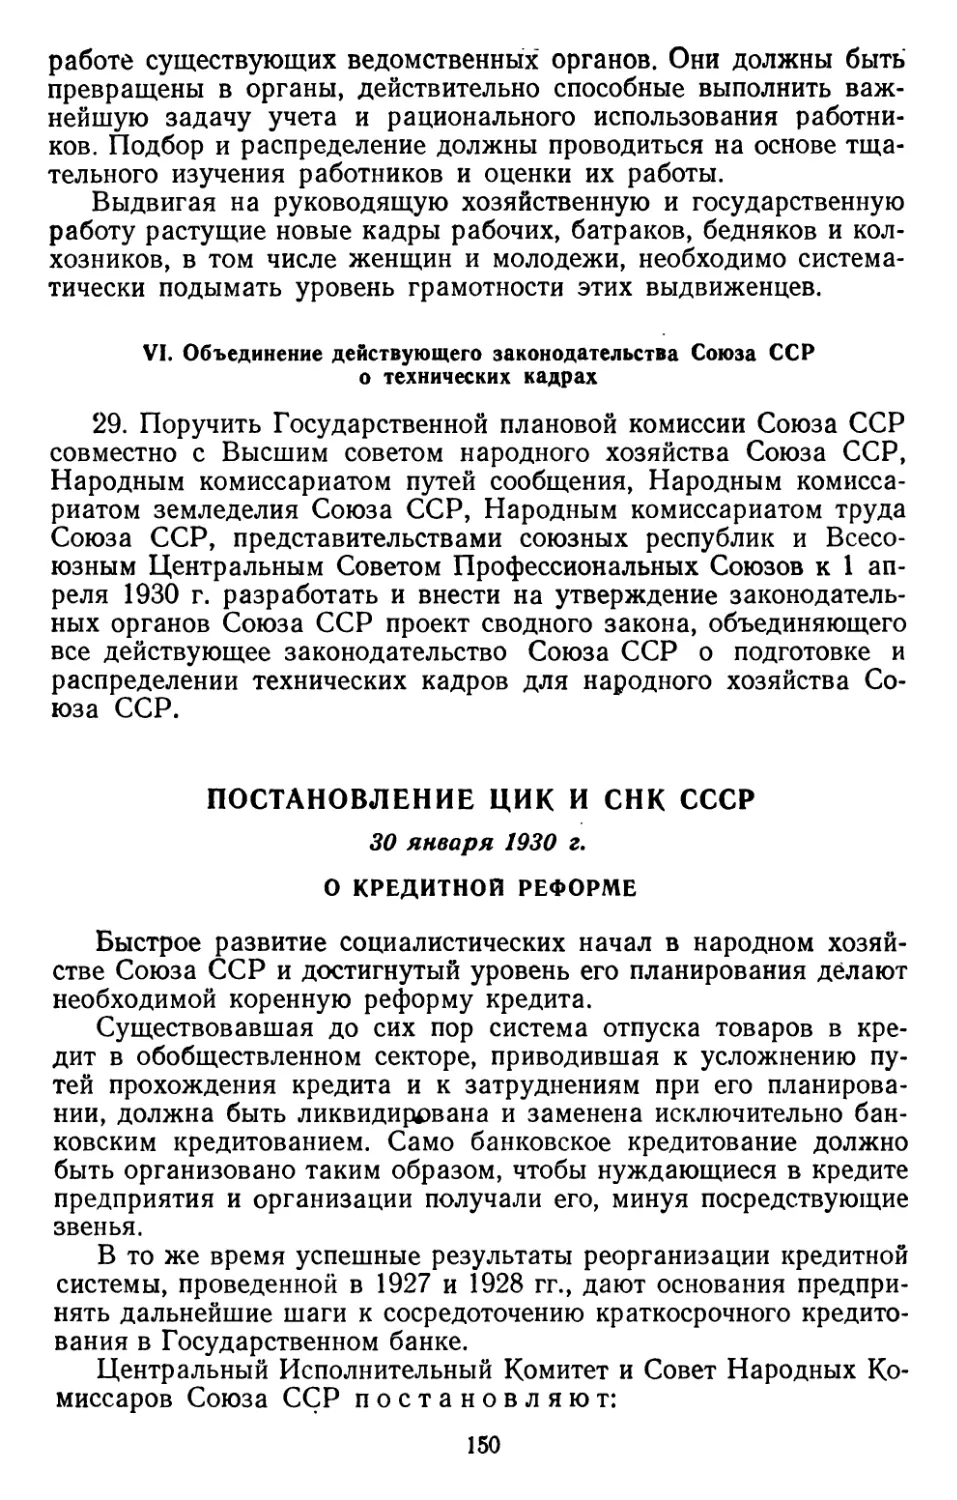 Постановление ЦИК и СНК СССР, 30 января 1930 г. О кредитной реформе